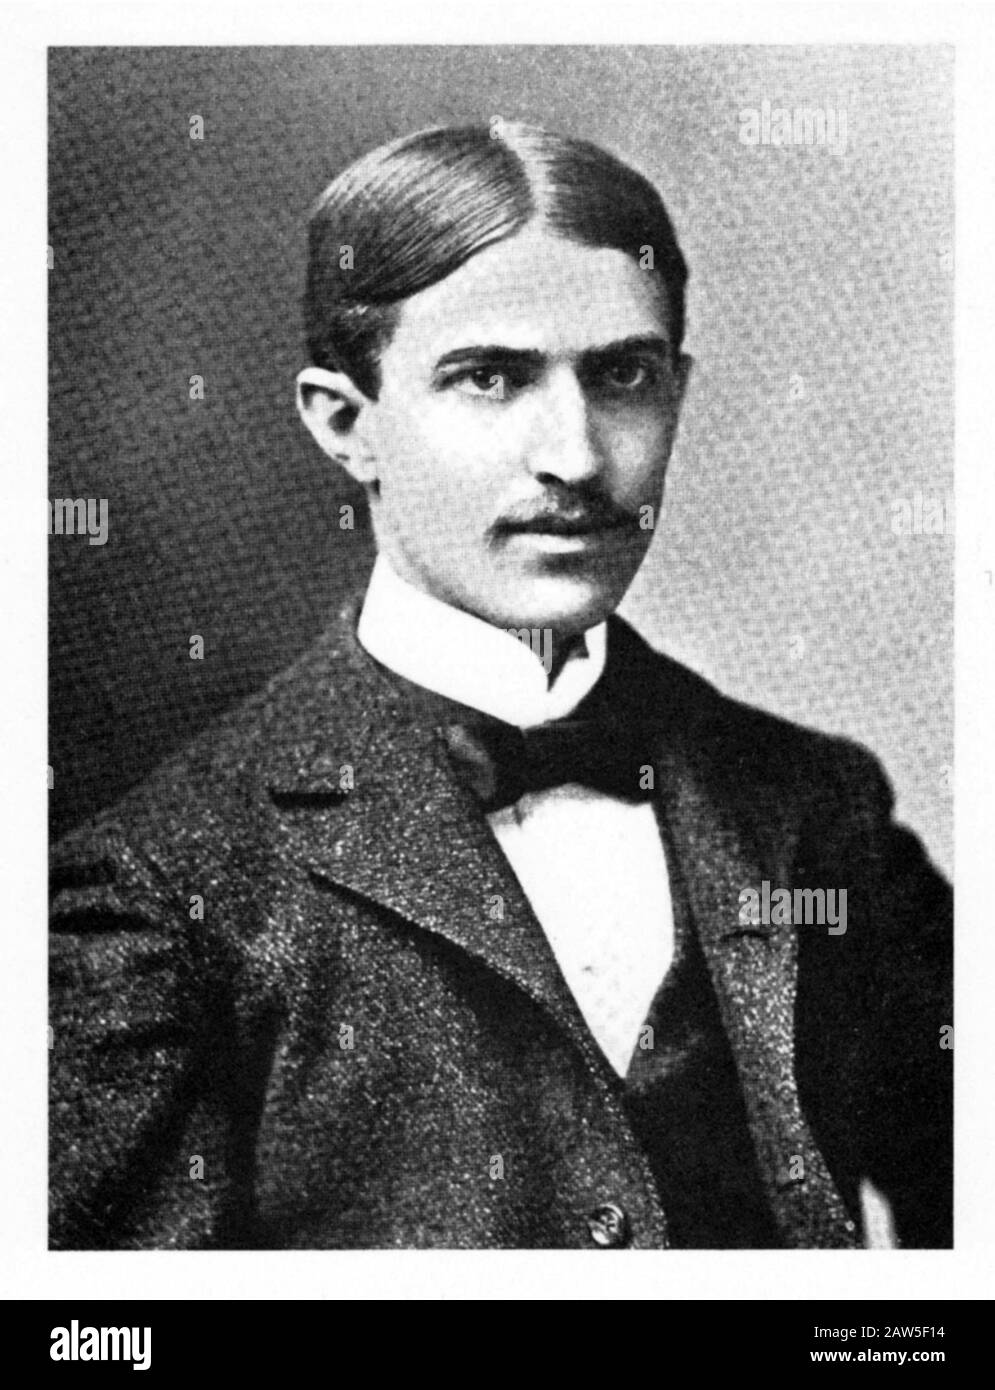 1896 , marzo , Washington, D.C., EE.UU. : el escritor americano novelista , periodista y poeta STEPHEN CRANE ( 1871 - 1900 ). - SPECTORE - LETTERATURA - Foto de stock